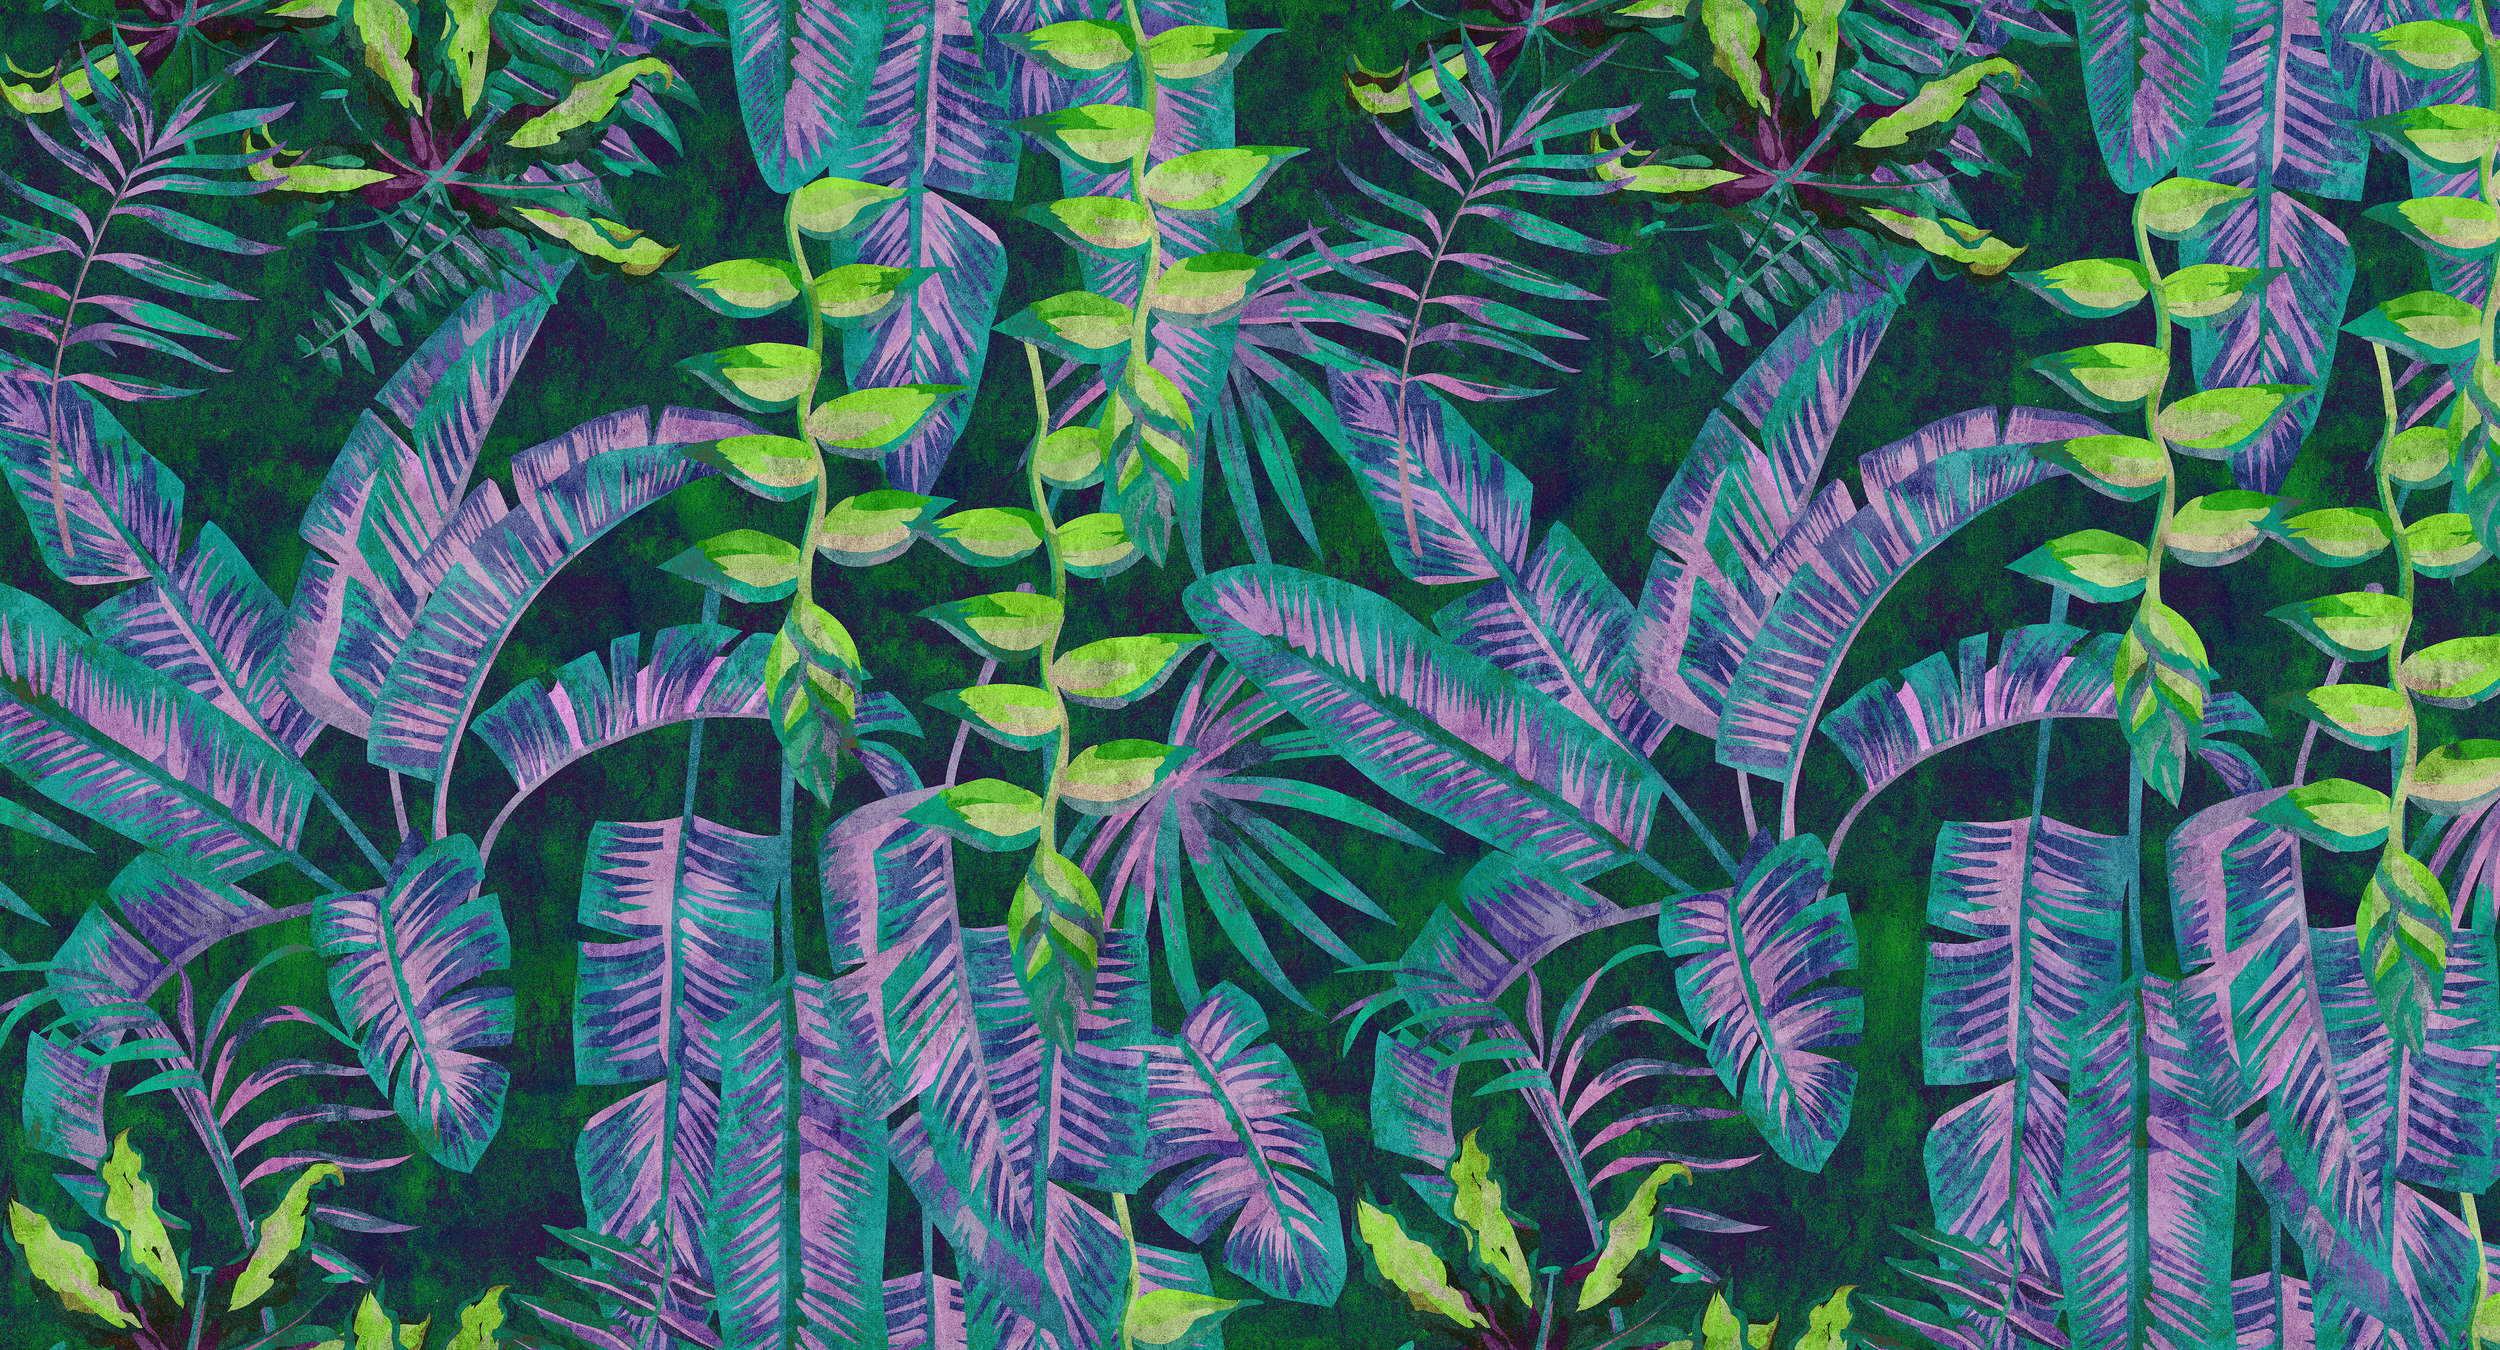             Tropicana 5 - Dschungel Fototapete mit Neon-Farben in Löschpapier Struktur – Blau, Grün | Perlmutt Glattvlies
        